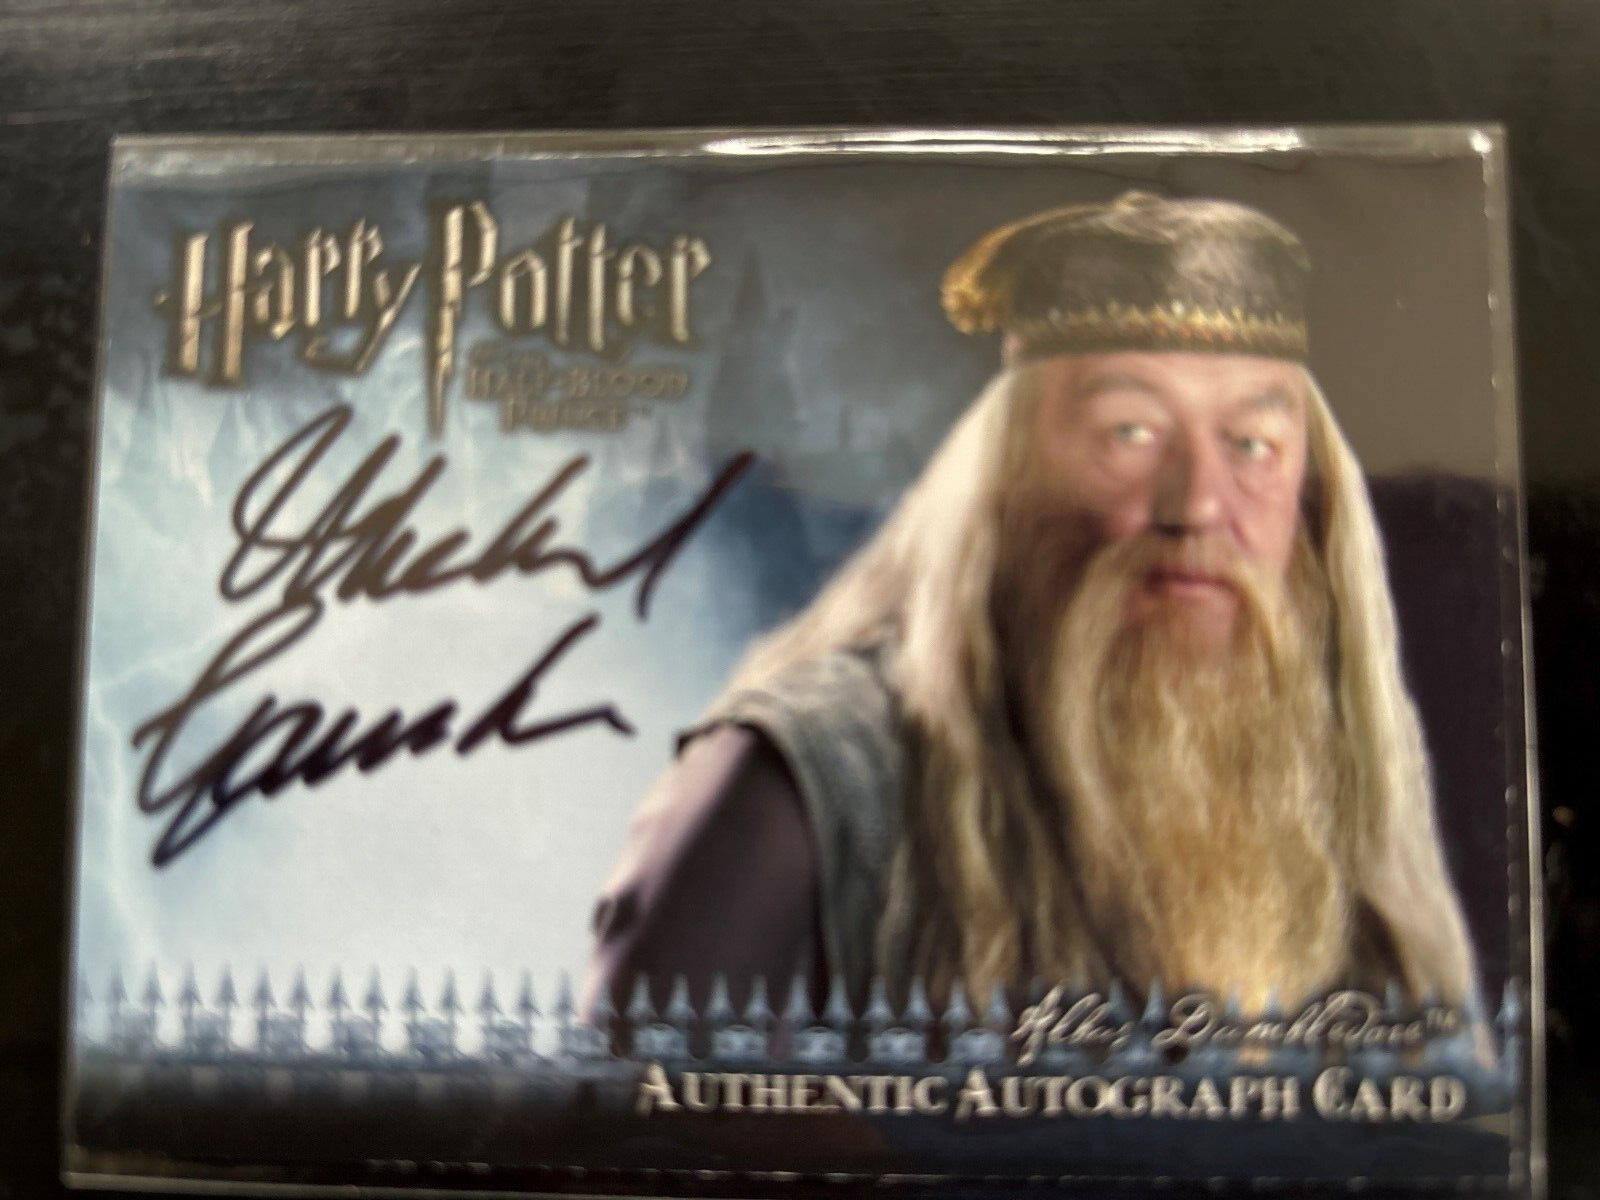 2009 Artbox Harry Potter Michael Gambon / Albus Dumbledore Autograph